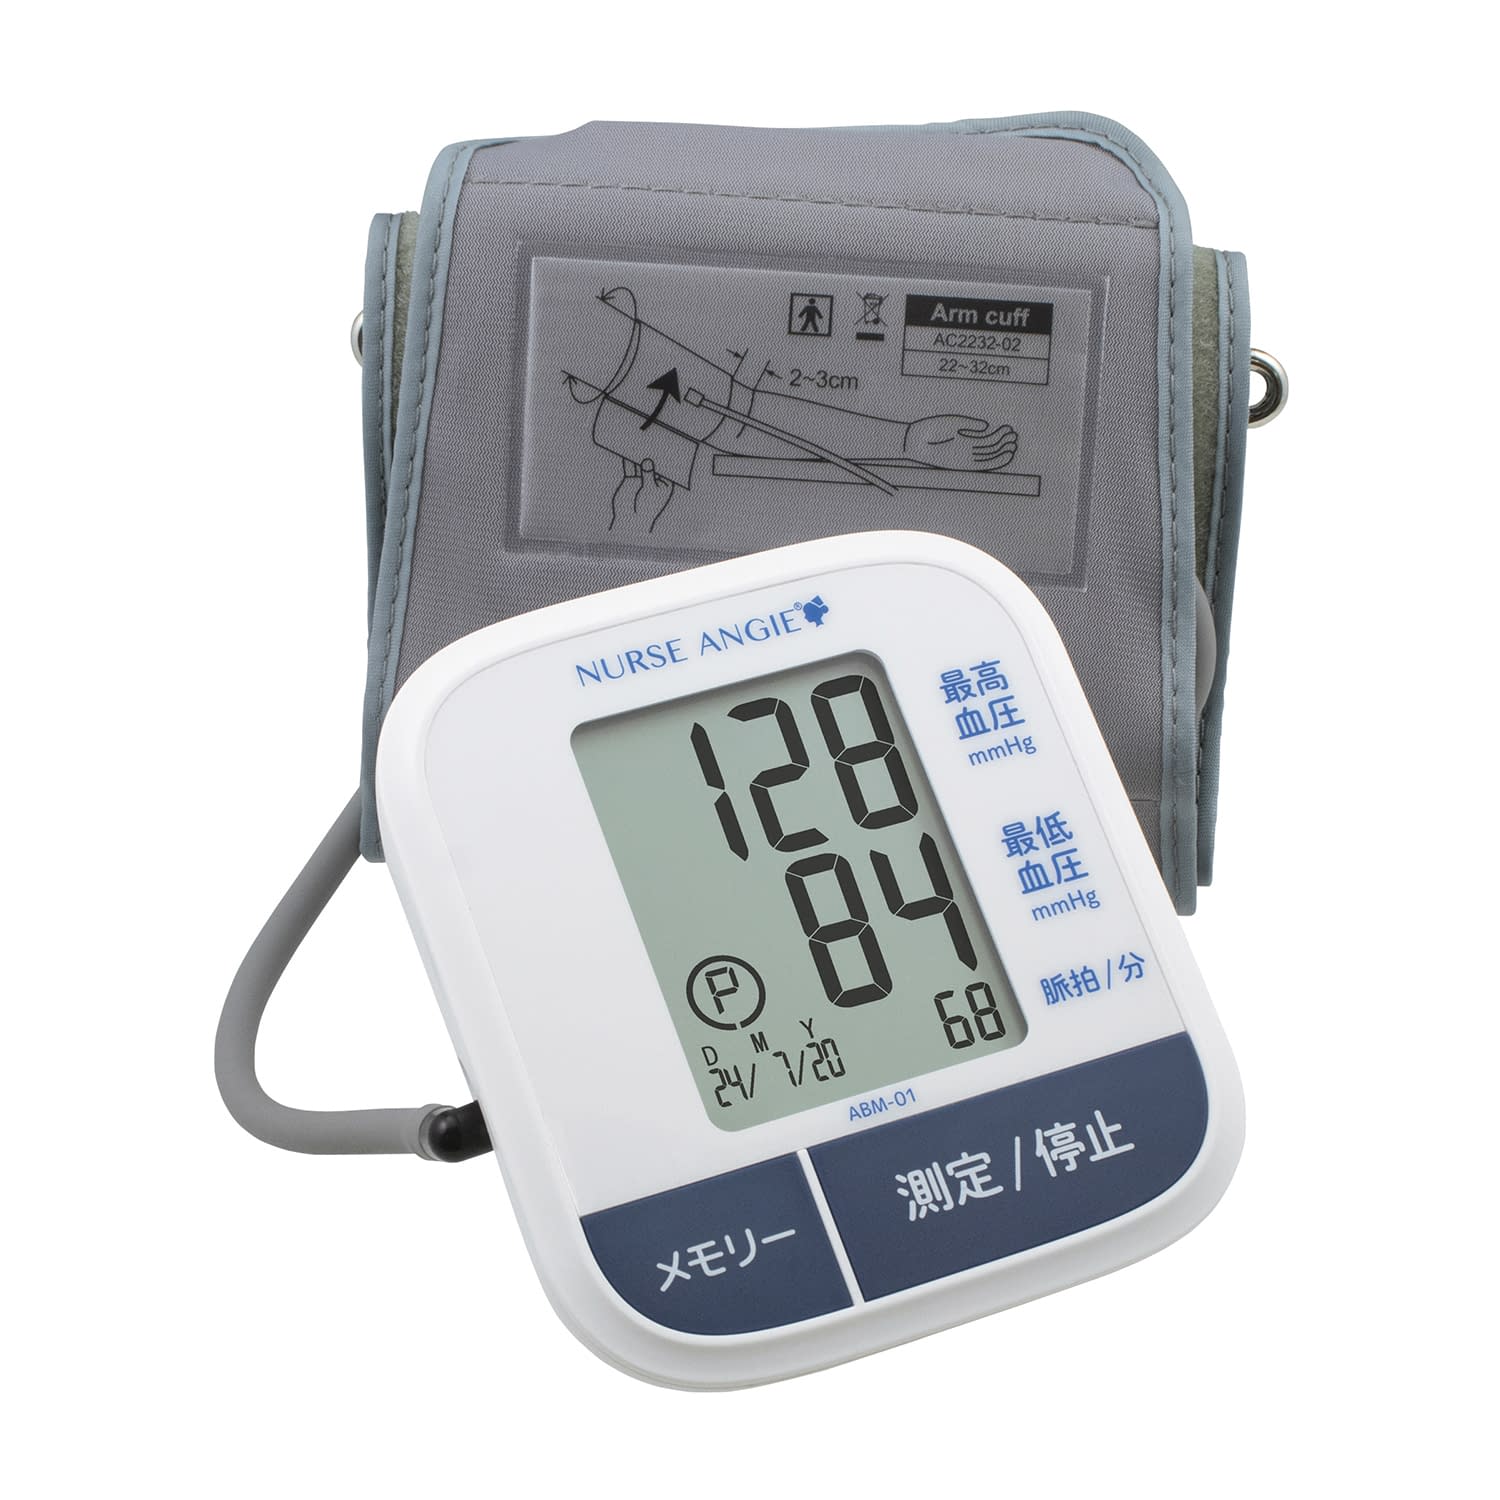 上腕式血圧計 ABM-01  24-9826-00【カスタム】(ABM-01)(24-9826-00)